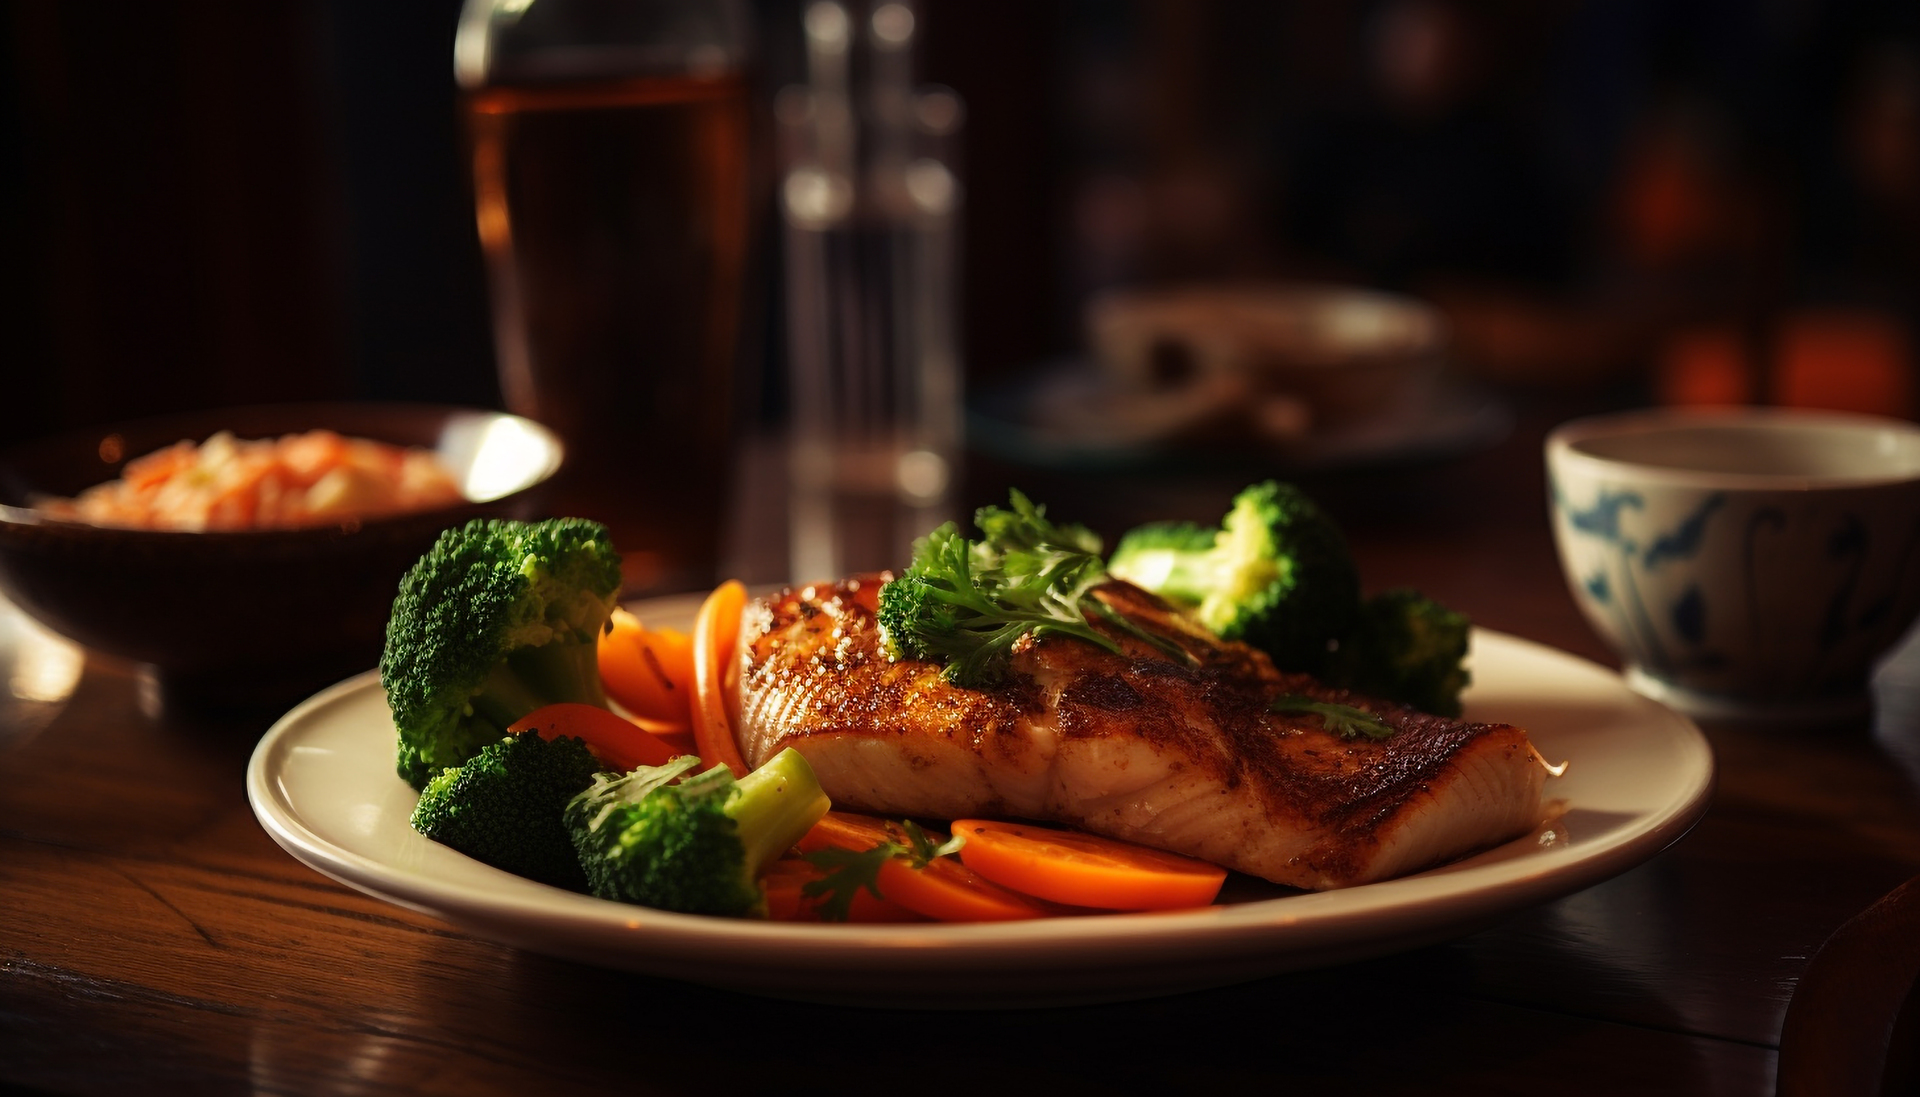 Grillowana ryba i warzywa na białym talerzu, jako przykład zdrowego i lekkiego obiadu